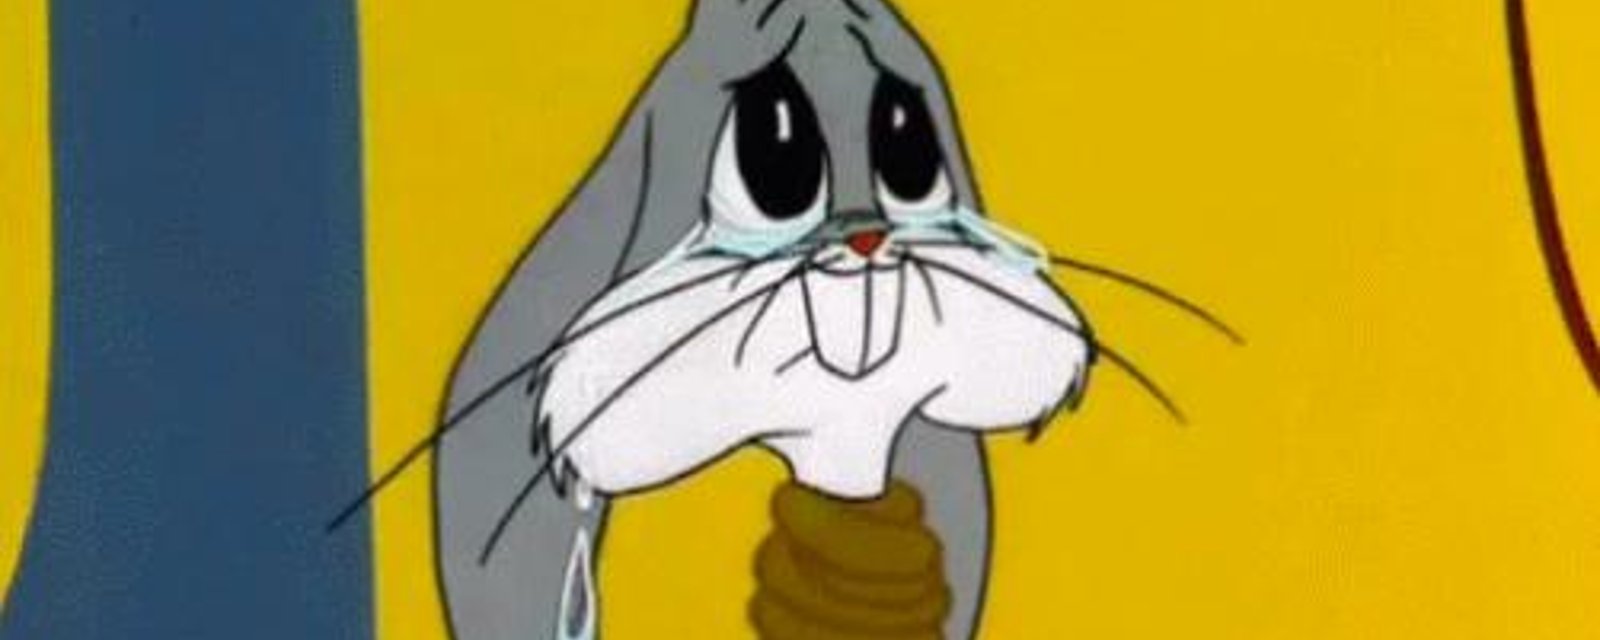 DERNIÈRE HEURE: Bugs Bunny est en deuil